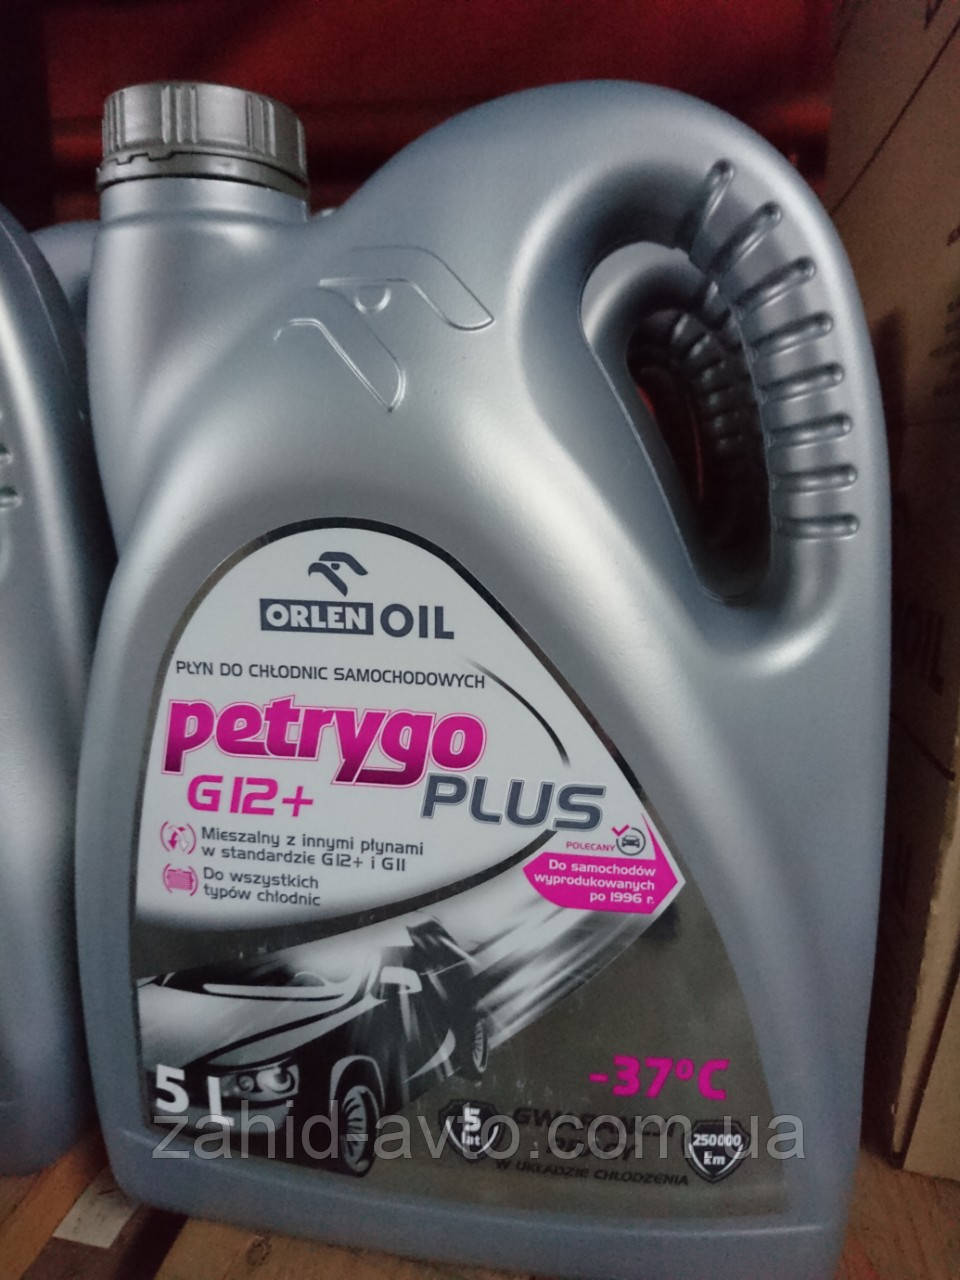  жидкость Orlen Petrygo Plus G12+ 5л: продажа, цена в Львове .